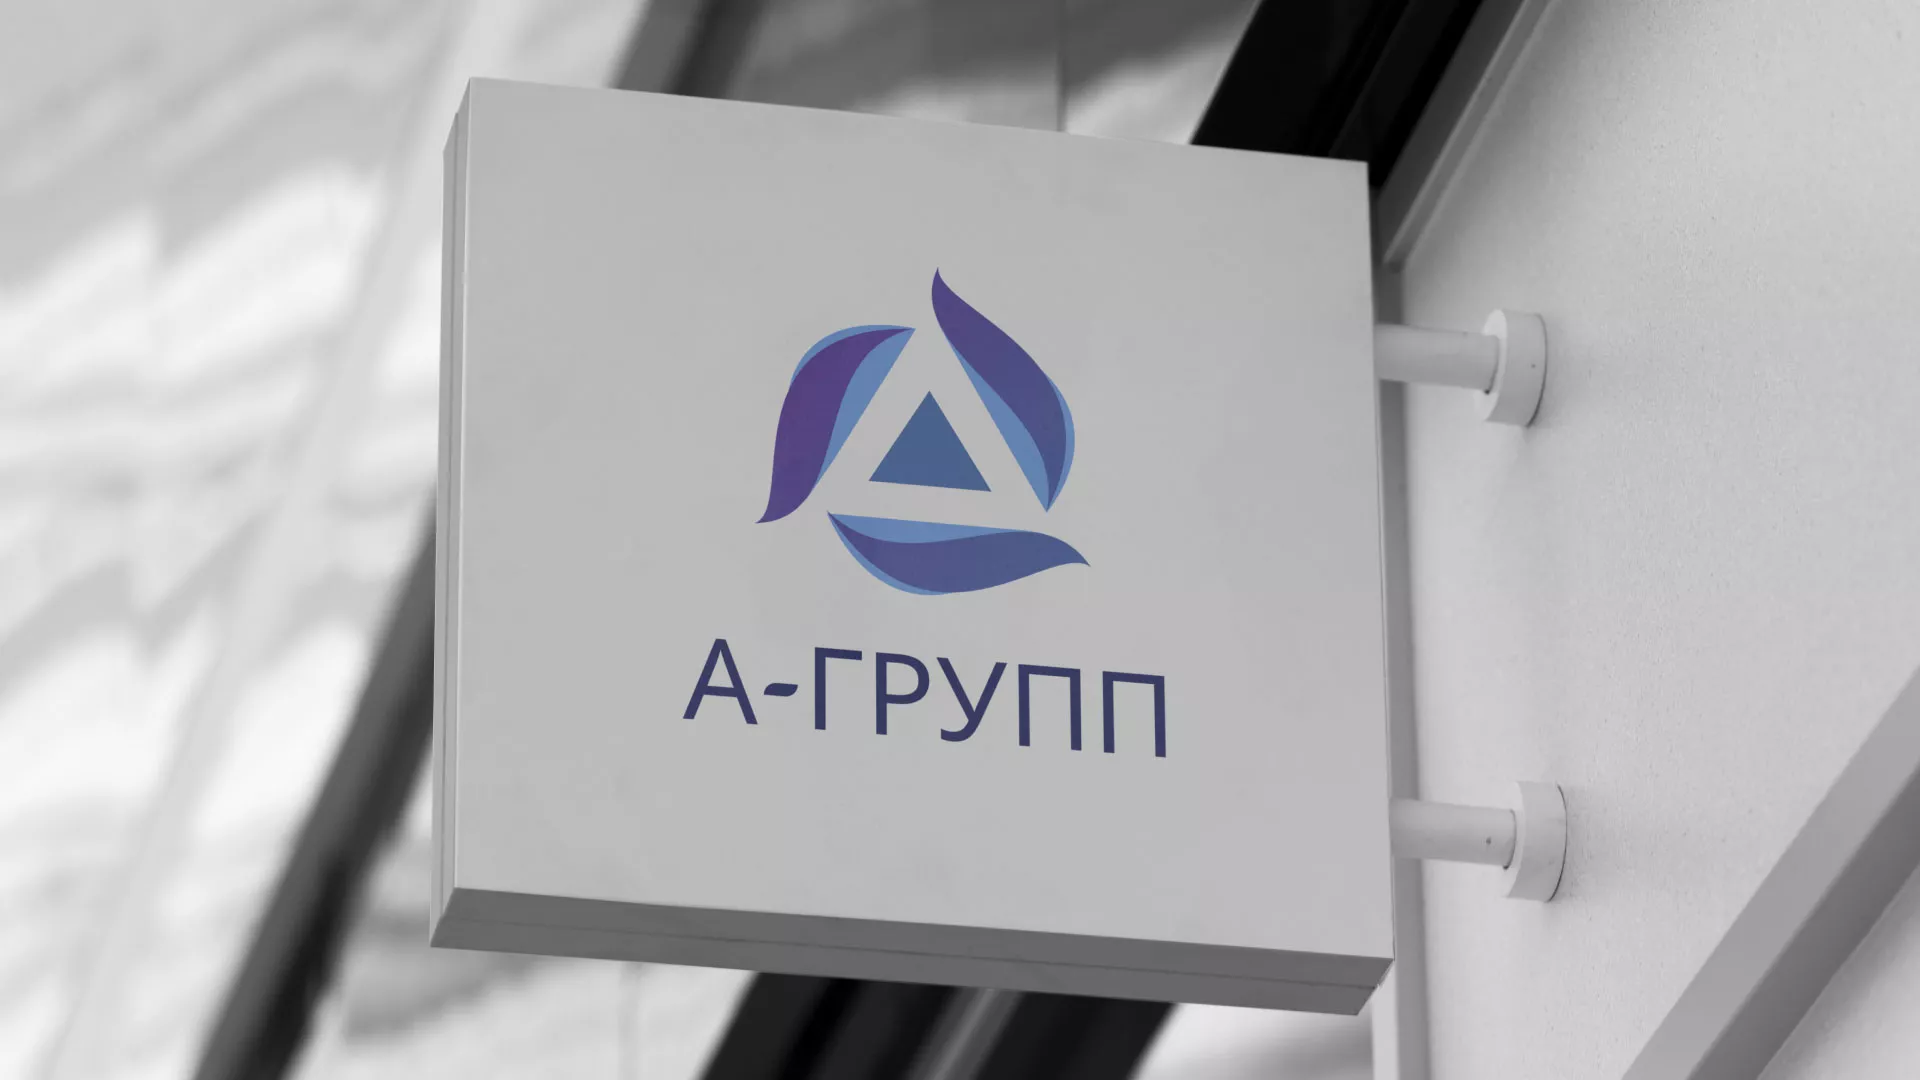 Создание логотипа компании «А-ГРУПП» в Зее